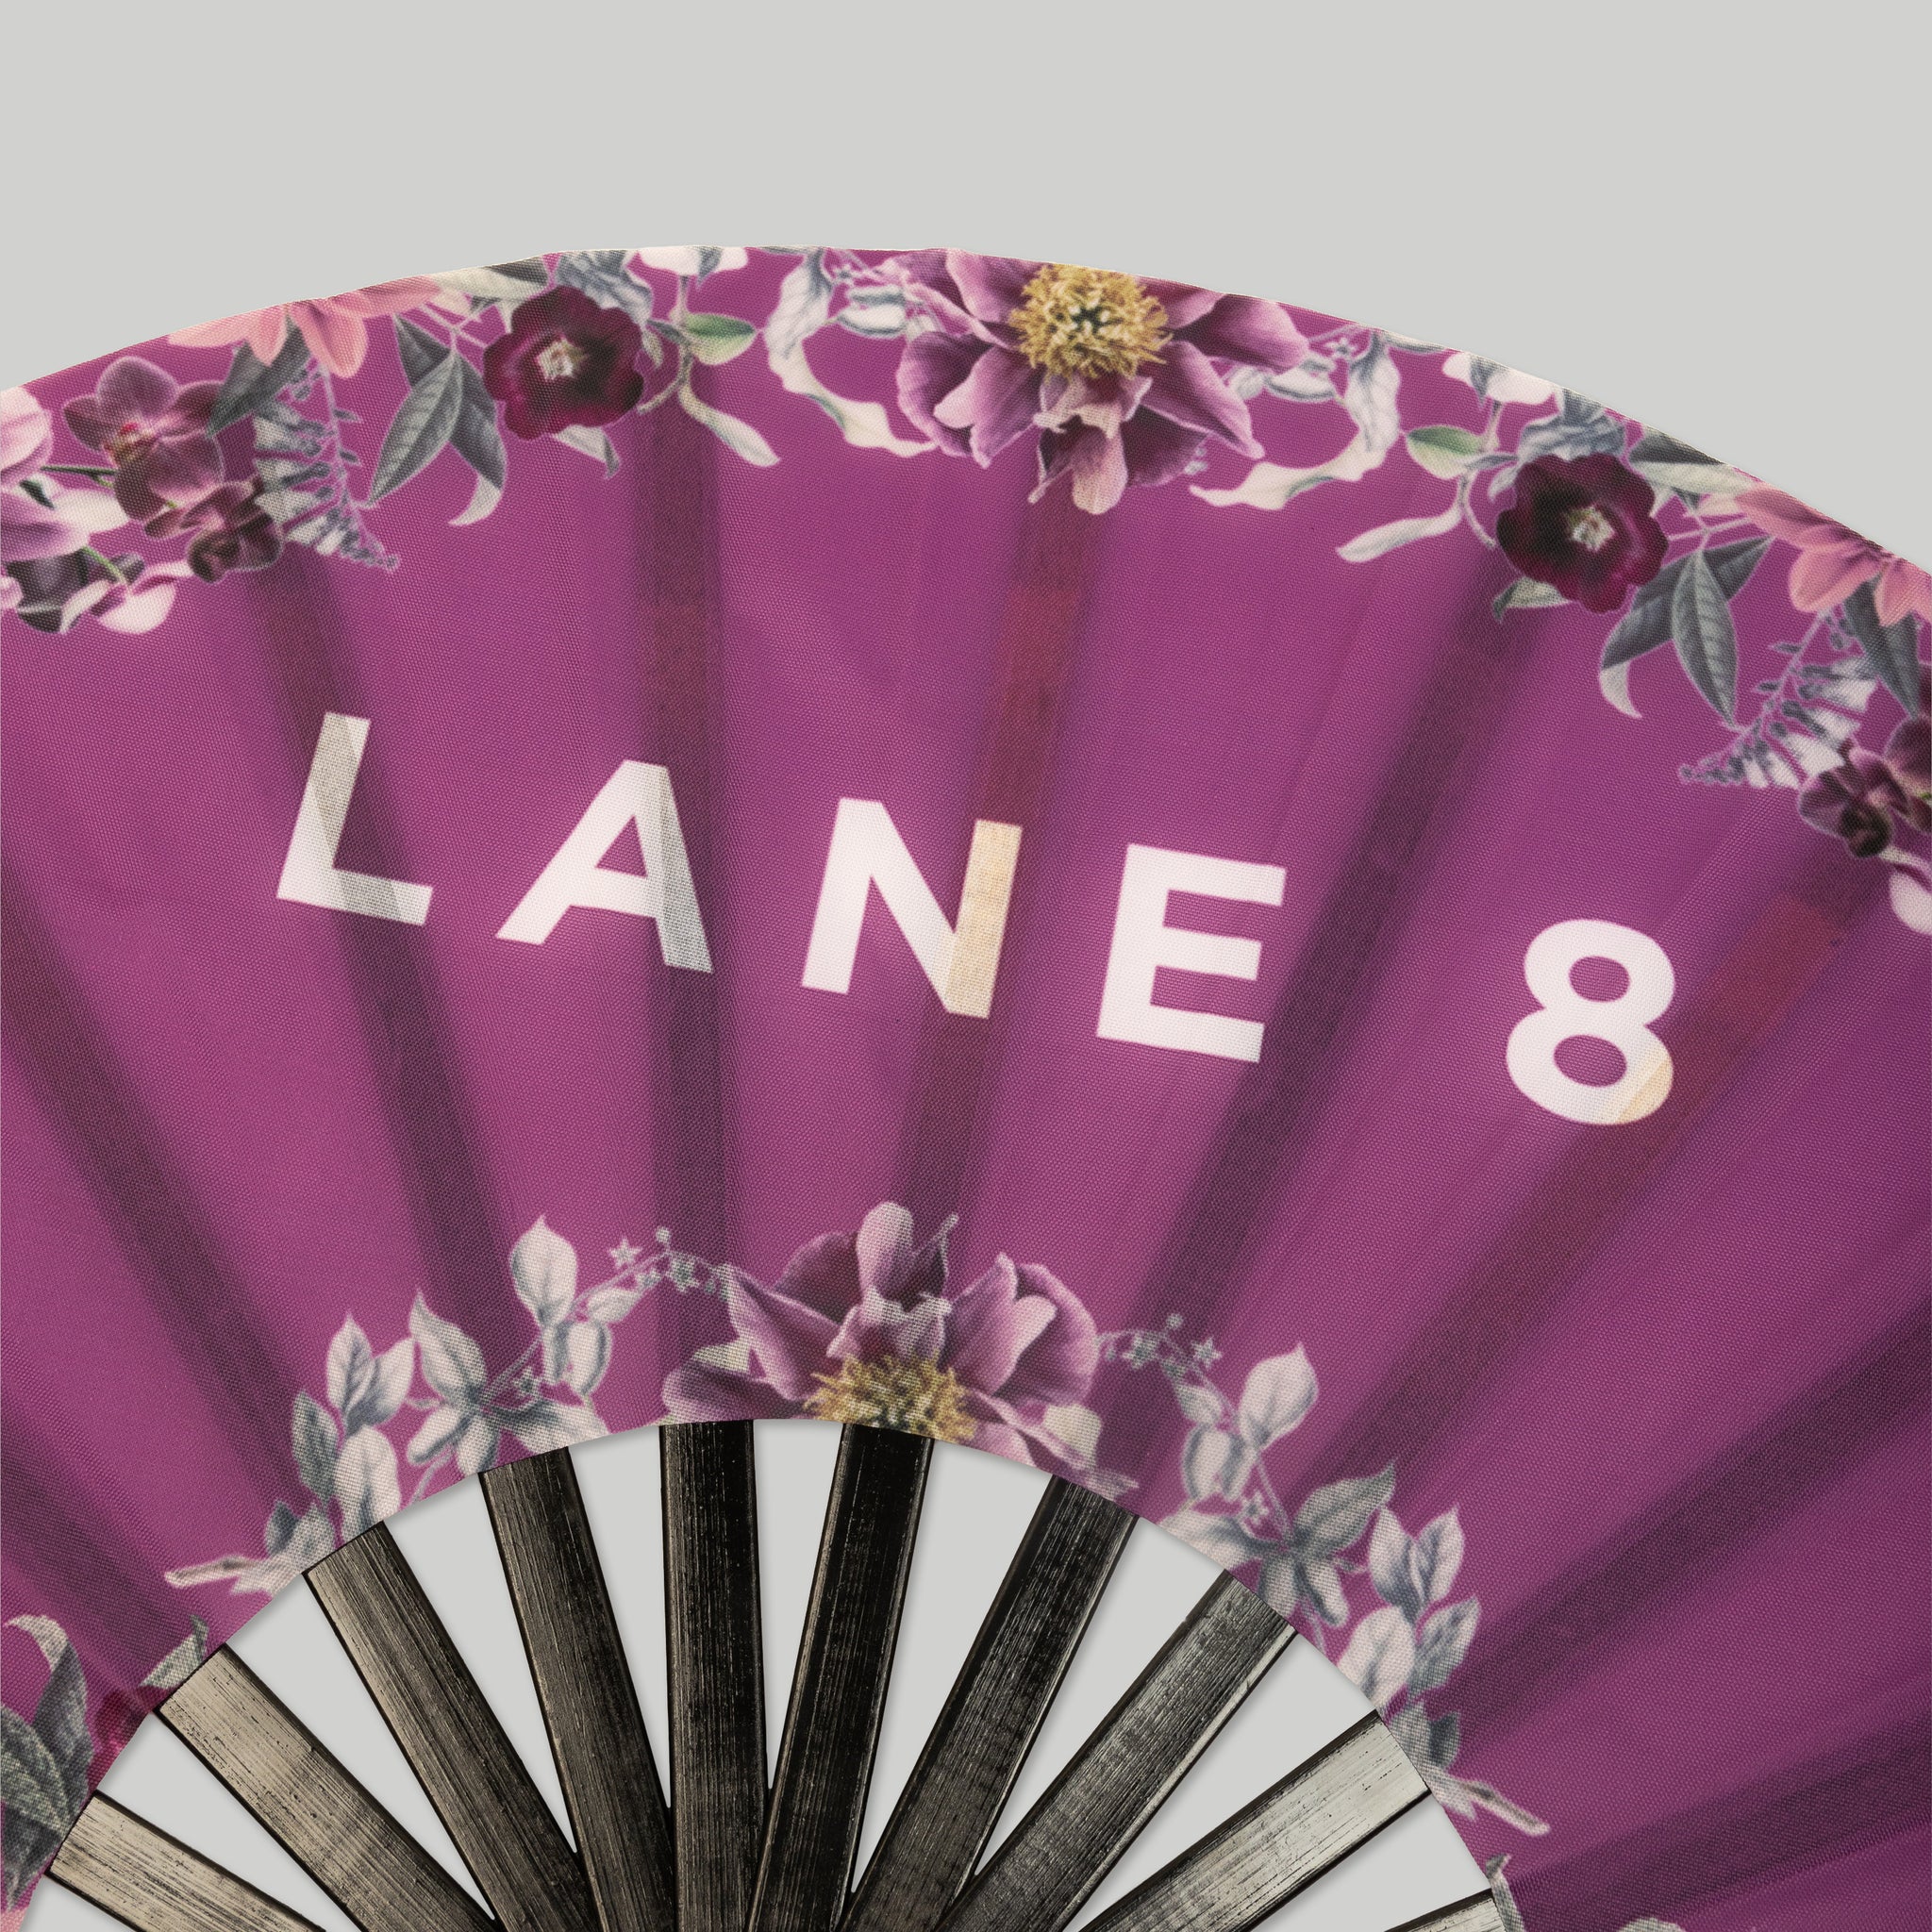 Lane 8 Floral Hand Fan